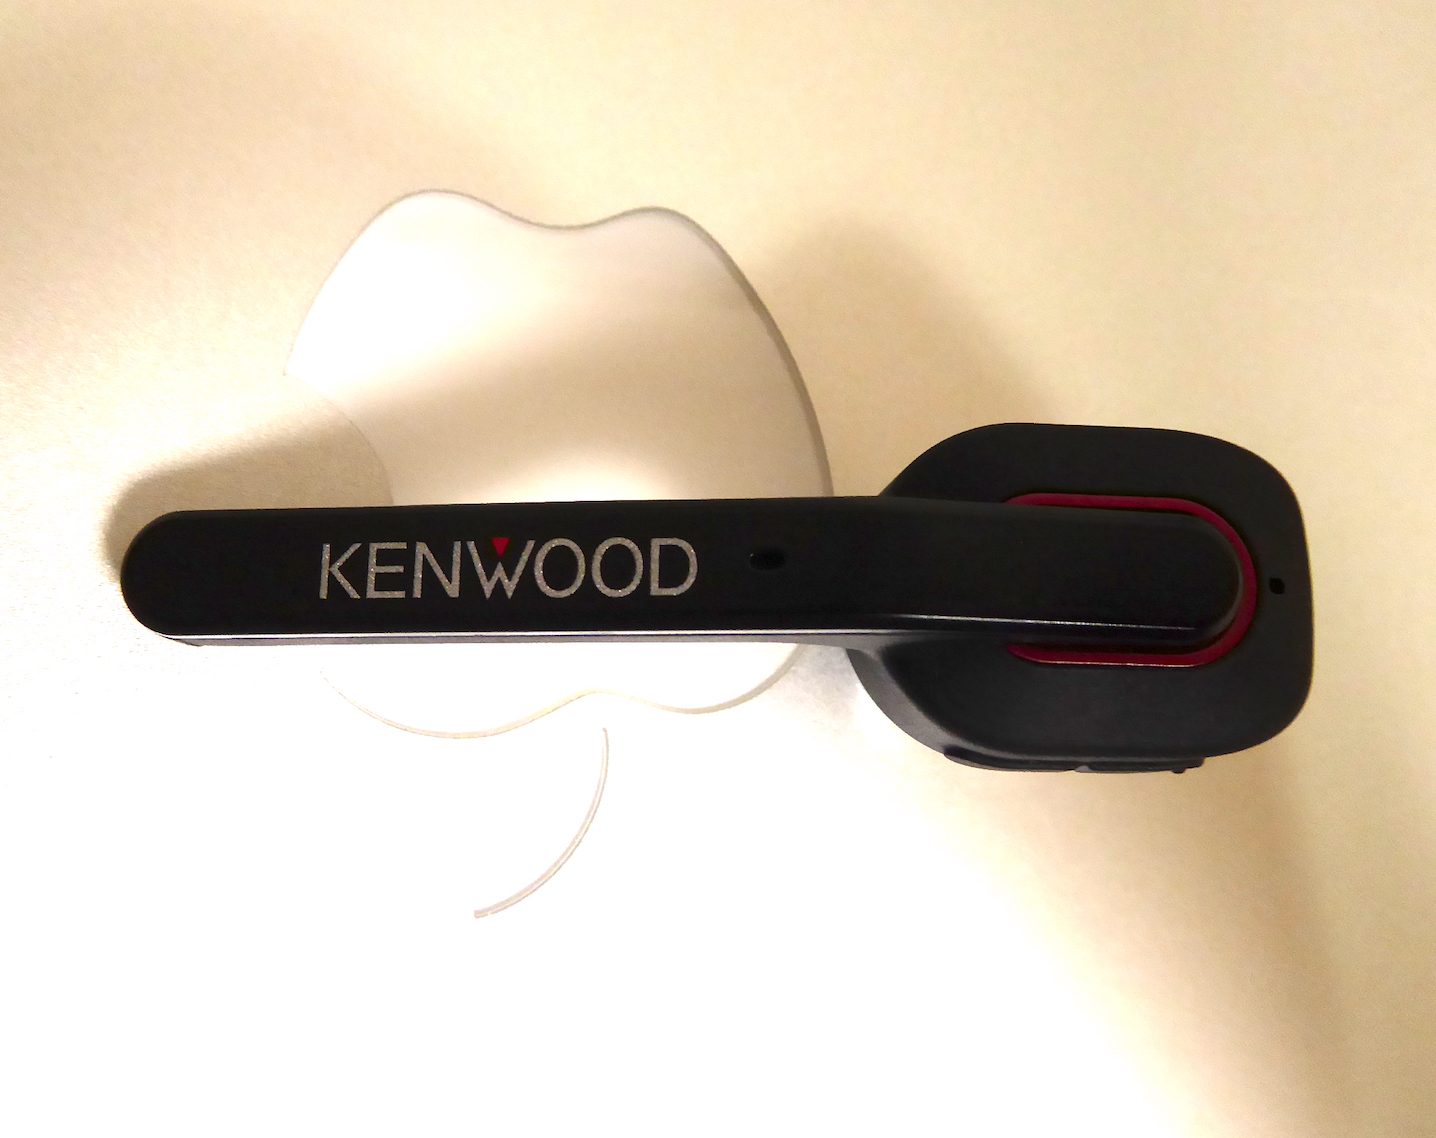 Bluetoothイヤホンで物理スイッチ,ボタンスイッチのあるモデル,ケンウッド KENWOOD KH-M700-B 片耳ヘッドセットを使ってみた,簡易レビューです,付属の説明書とメーカーページリンク  ブルージョナサンのブログ